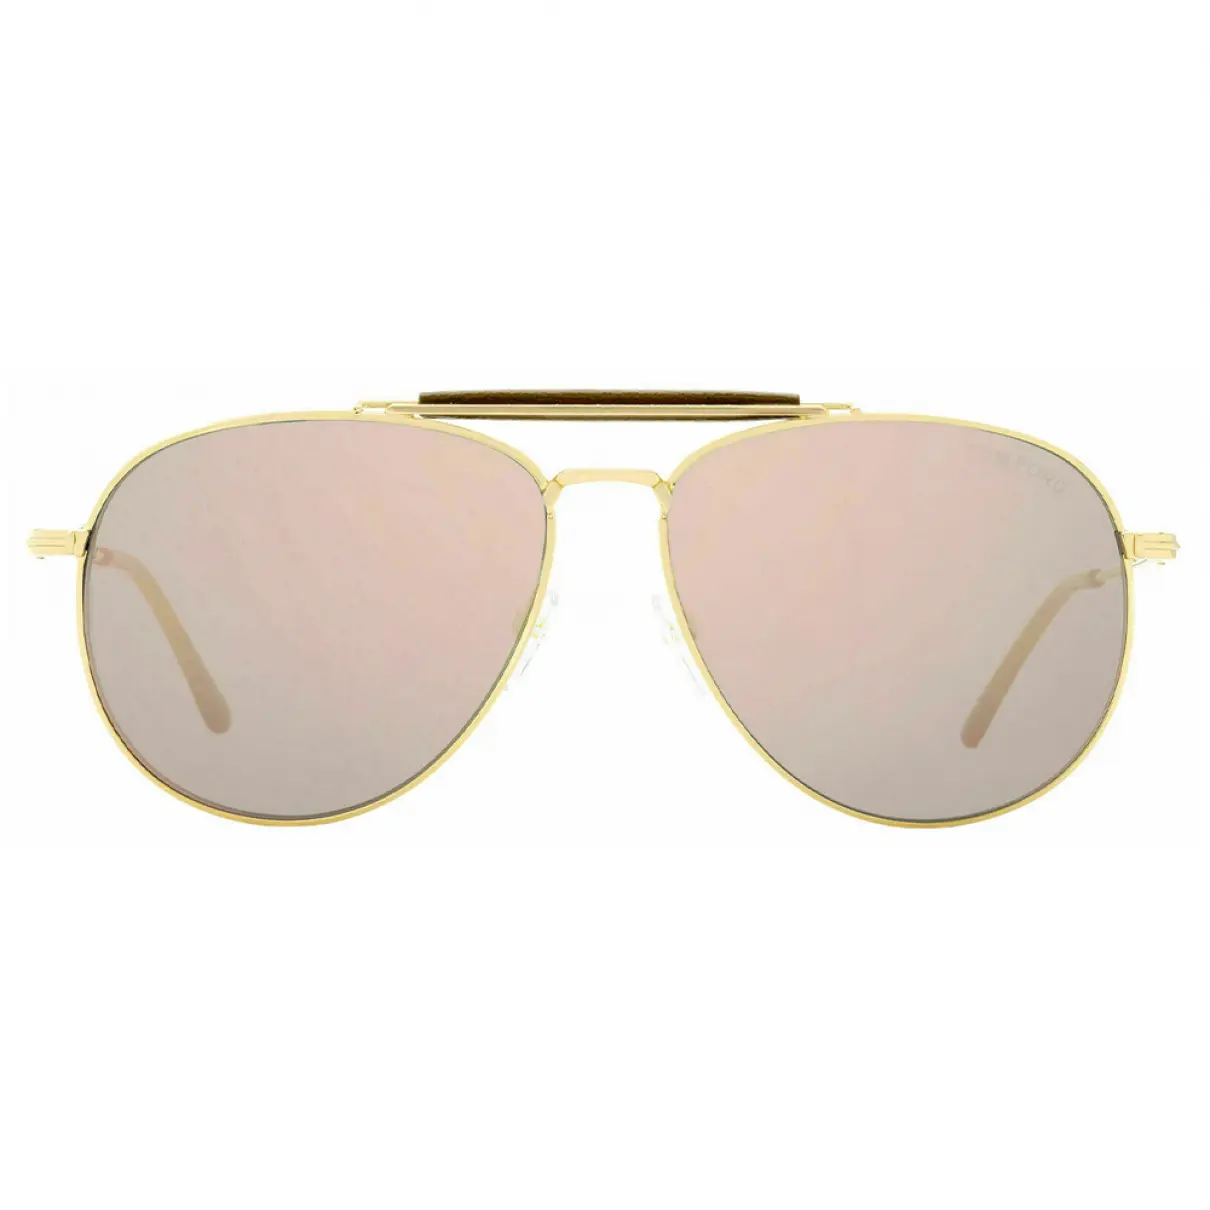 Buy Tom Ford Aviator sunglasses online